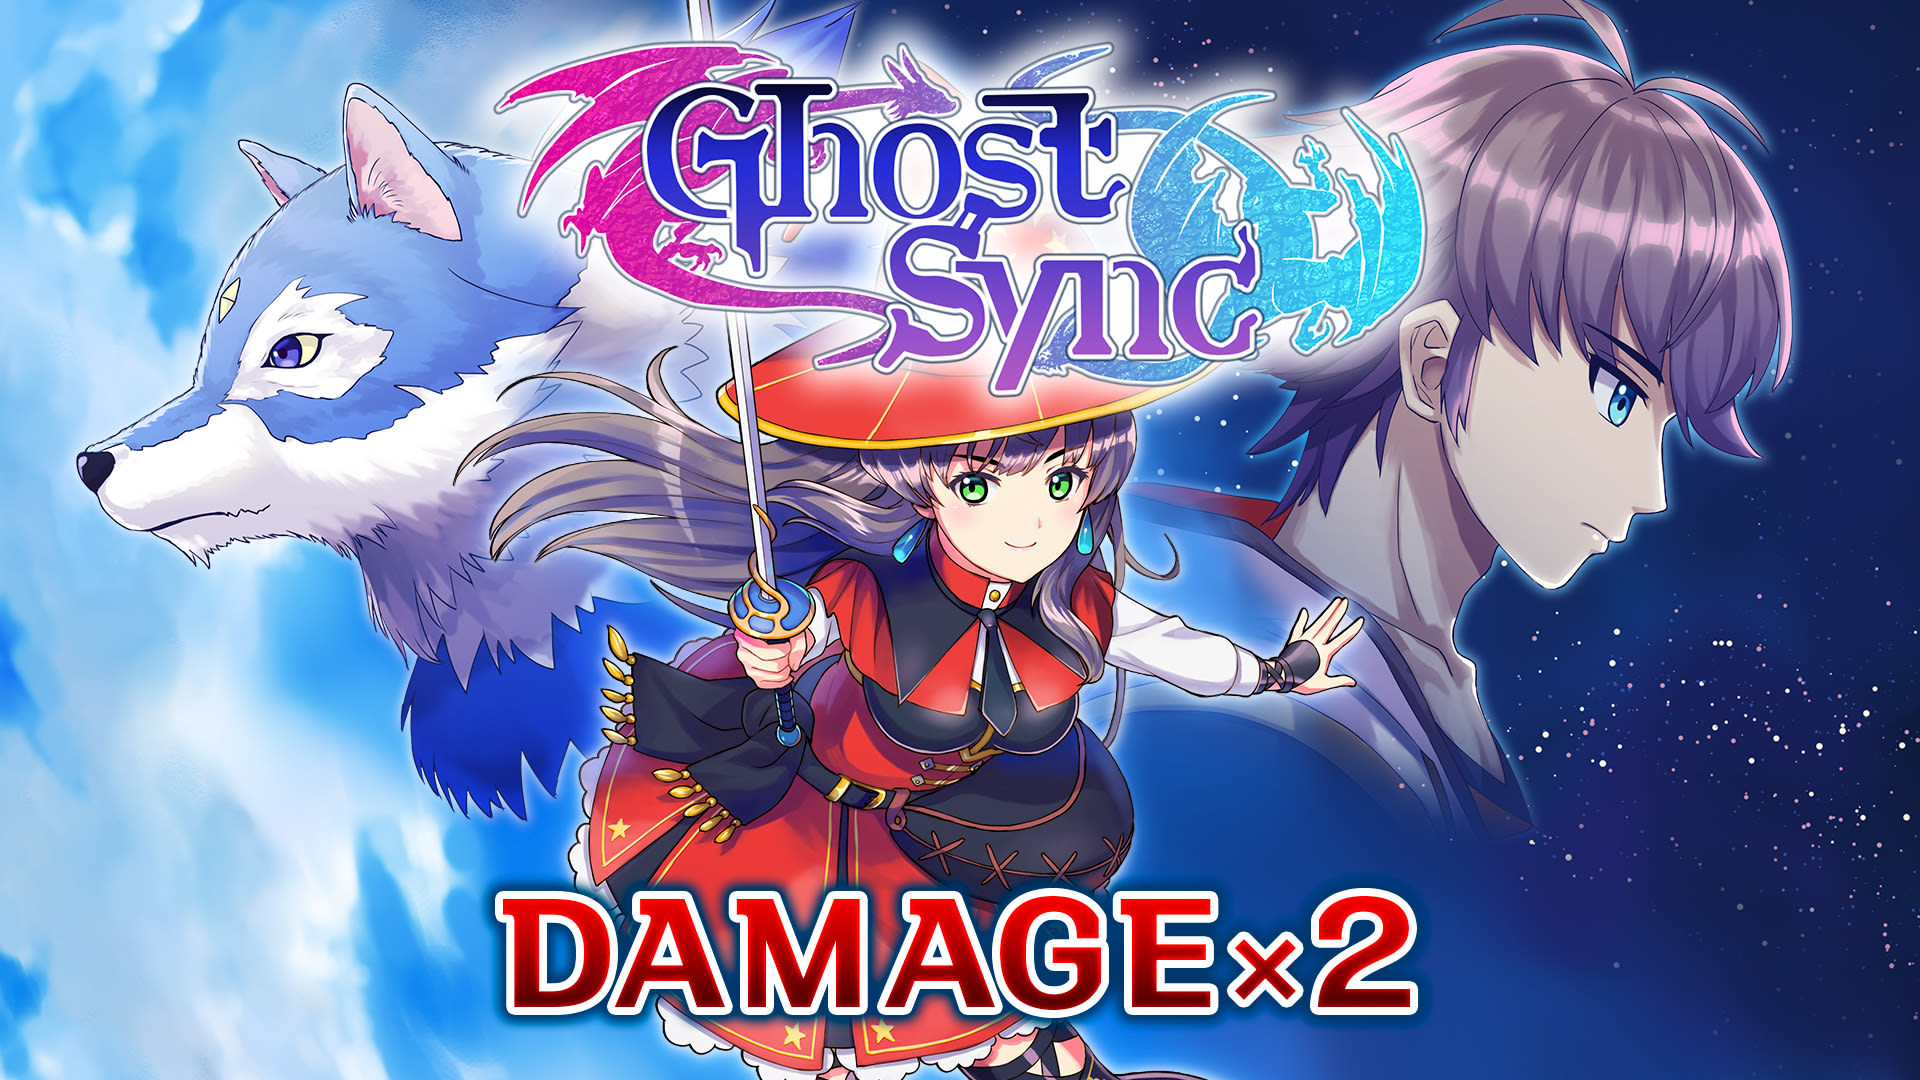 Damage x2 - Ghost Sync